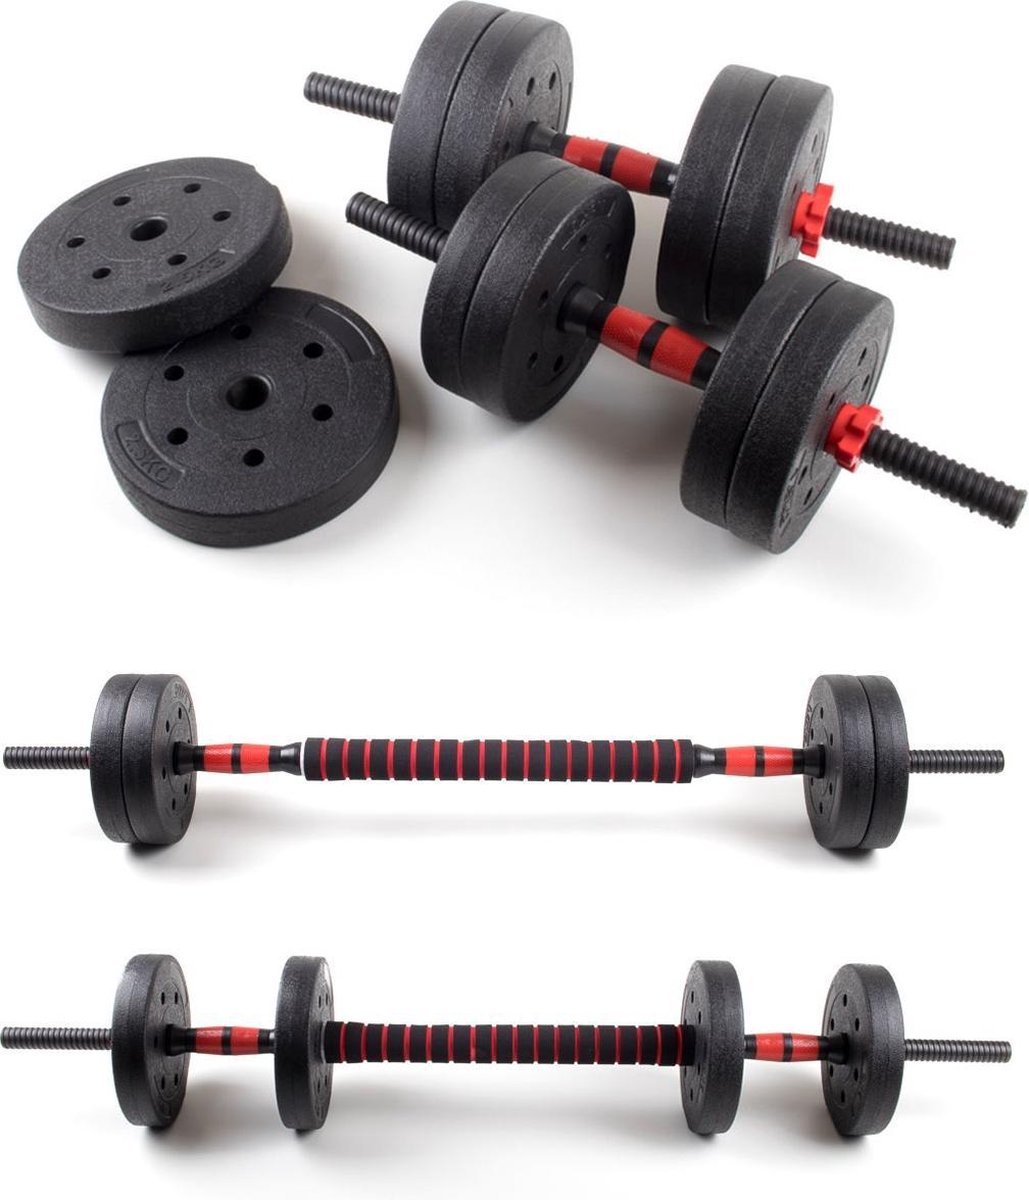 Dumbbellset 25 kg met halterstang - Dumbbells verstelbaar - Halterset - Fitness gewichten set - Rood/zwart